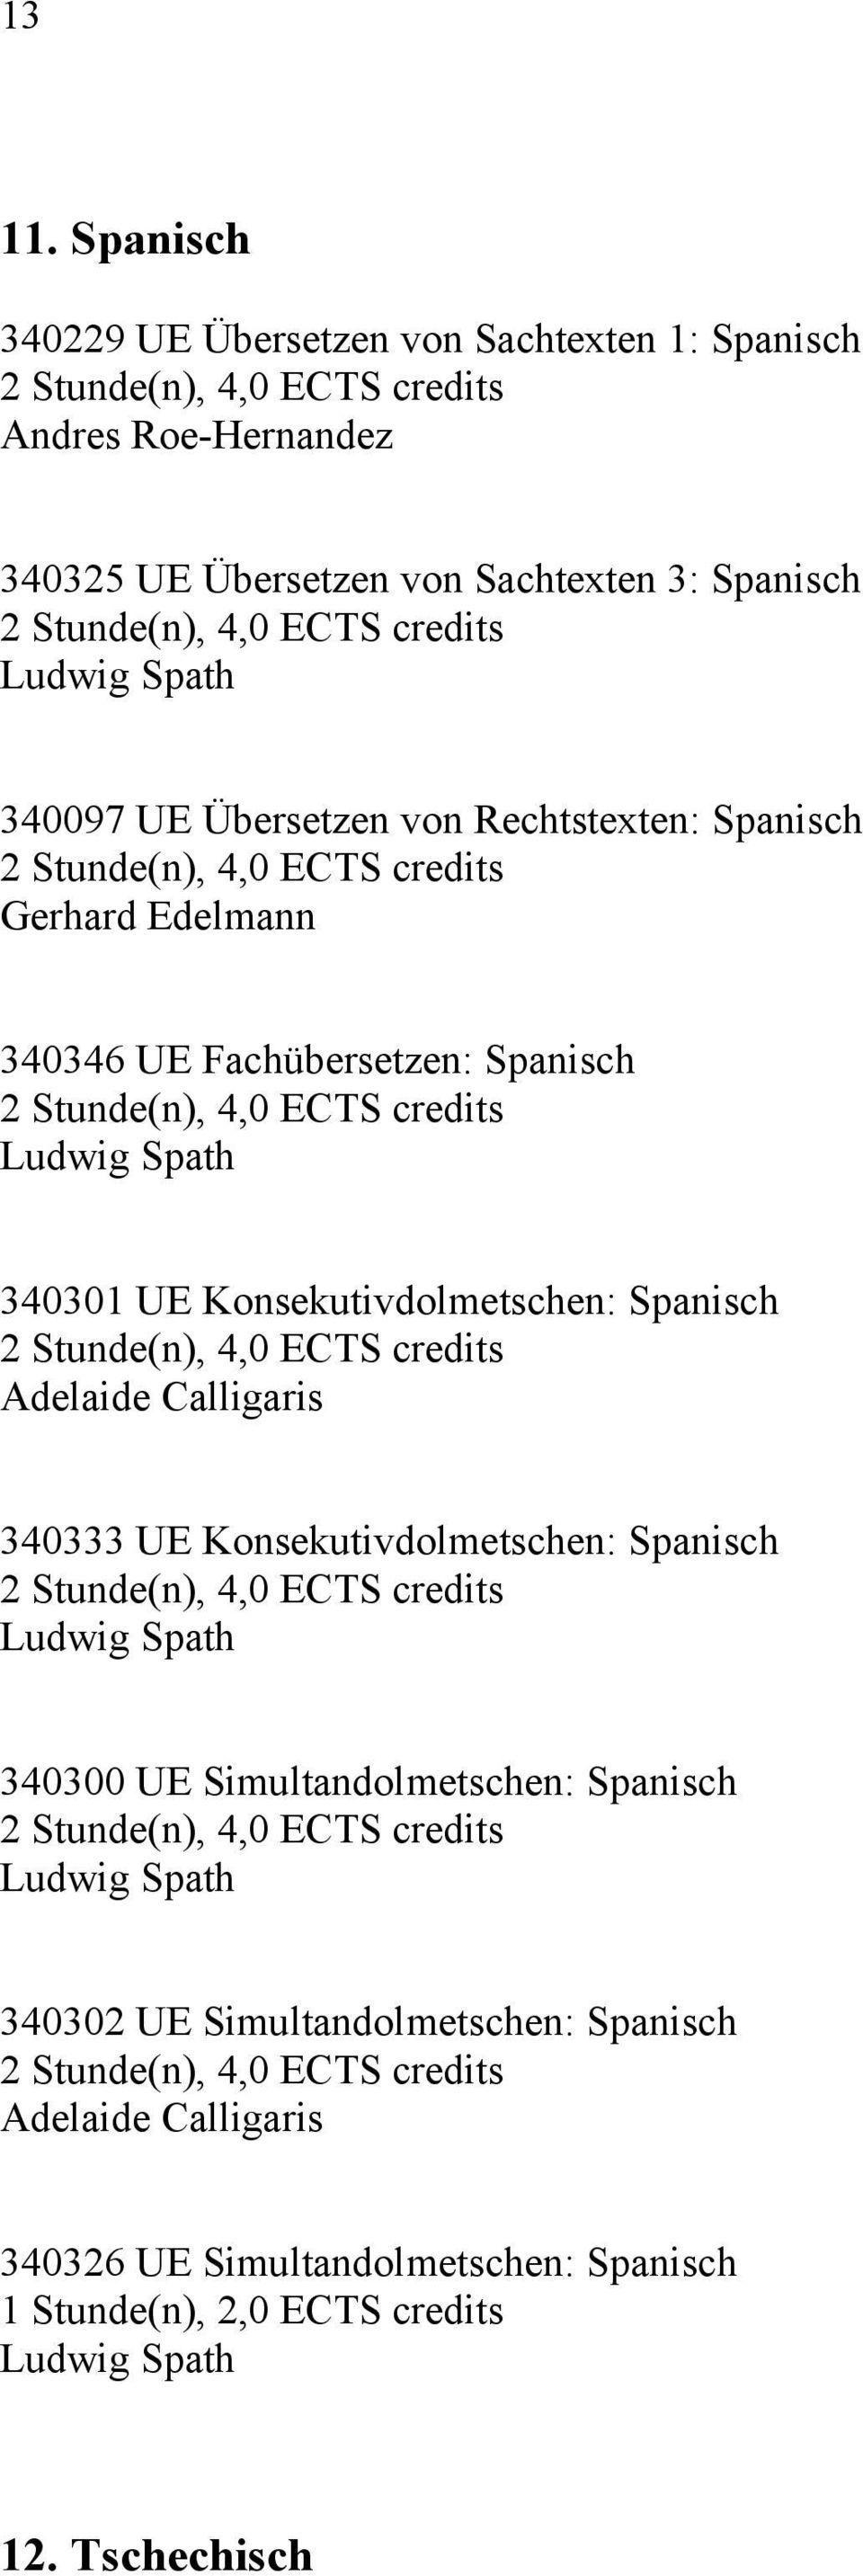 340097 UE Übersetzen von Rechtstexten: Spanisch Gerhard Edelmann 340346 UE Fachübersetzen: Spanisch Ludwig Spath 340301 UE